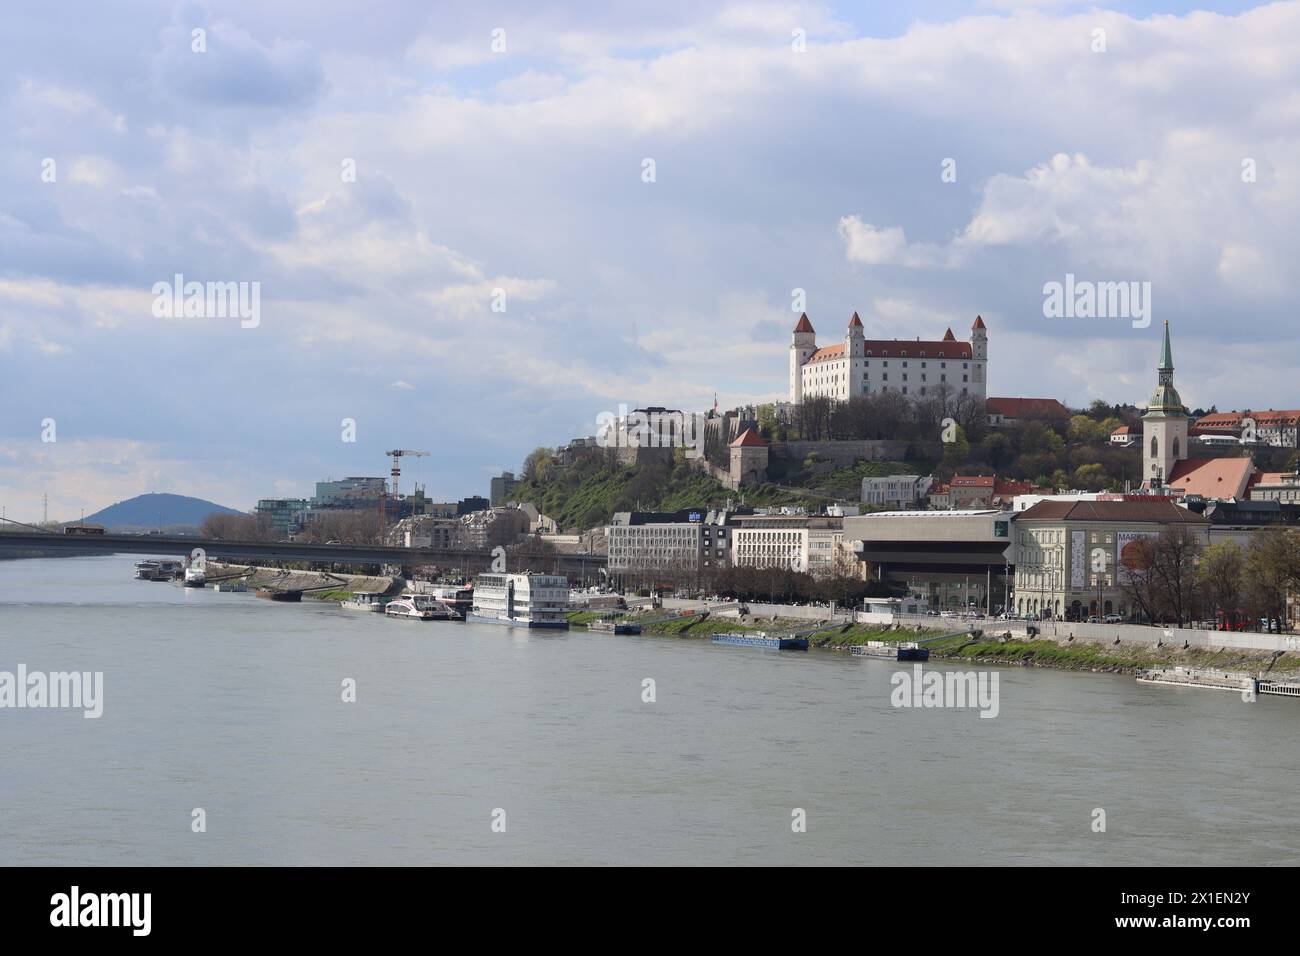 Vue panoramique de la vieille ville de Bratislava depuis le Danube. Château de Bratislava par jour nuageux. Concept d'architecture européenne. Banque D'Images